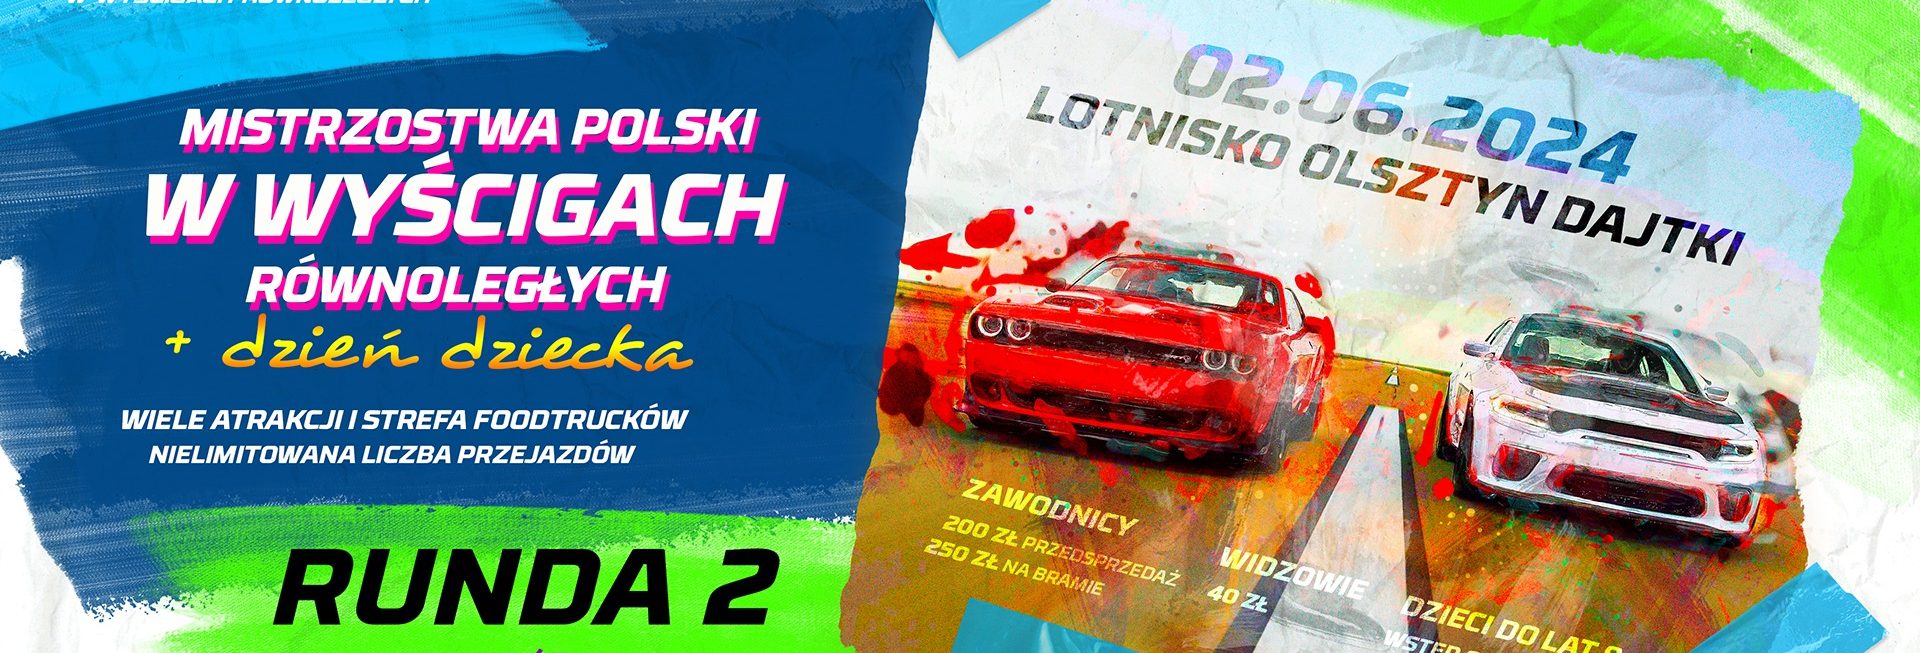 Plakat zapraszający w niedzielę 2 czerwca 2024 r. na Lotnisko Olsztyn-Dajtki na Mistrzostwa Polski w Wyścigach Równoległych Lotnisko Olsztyn-Dajtki 2024.